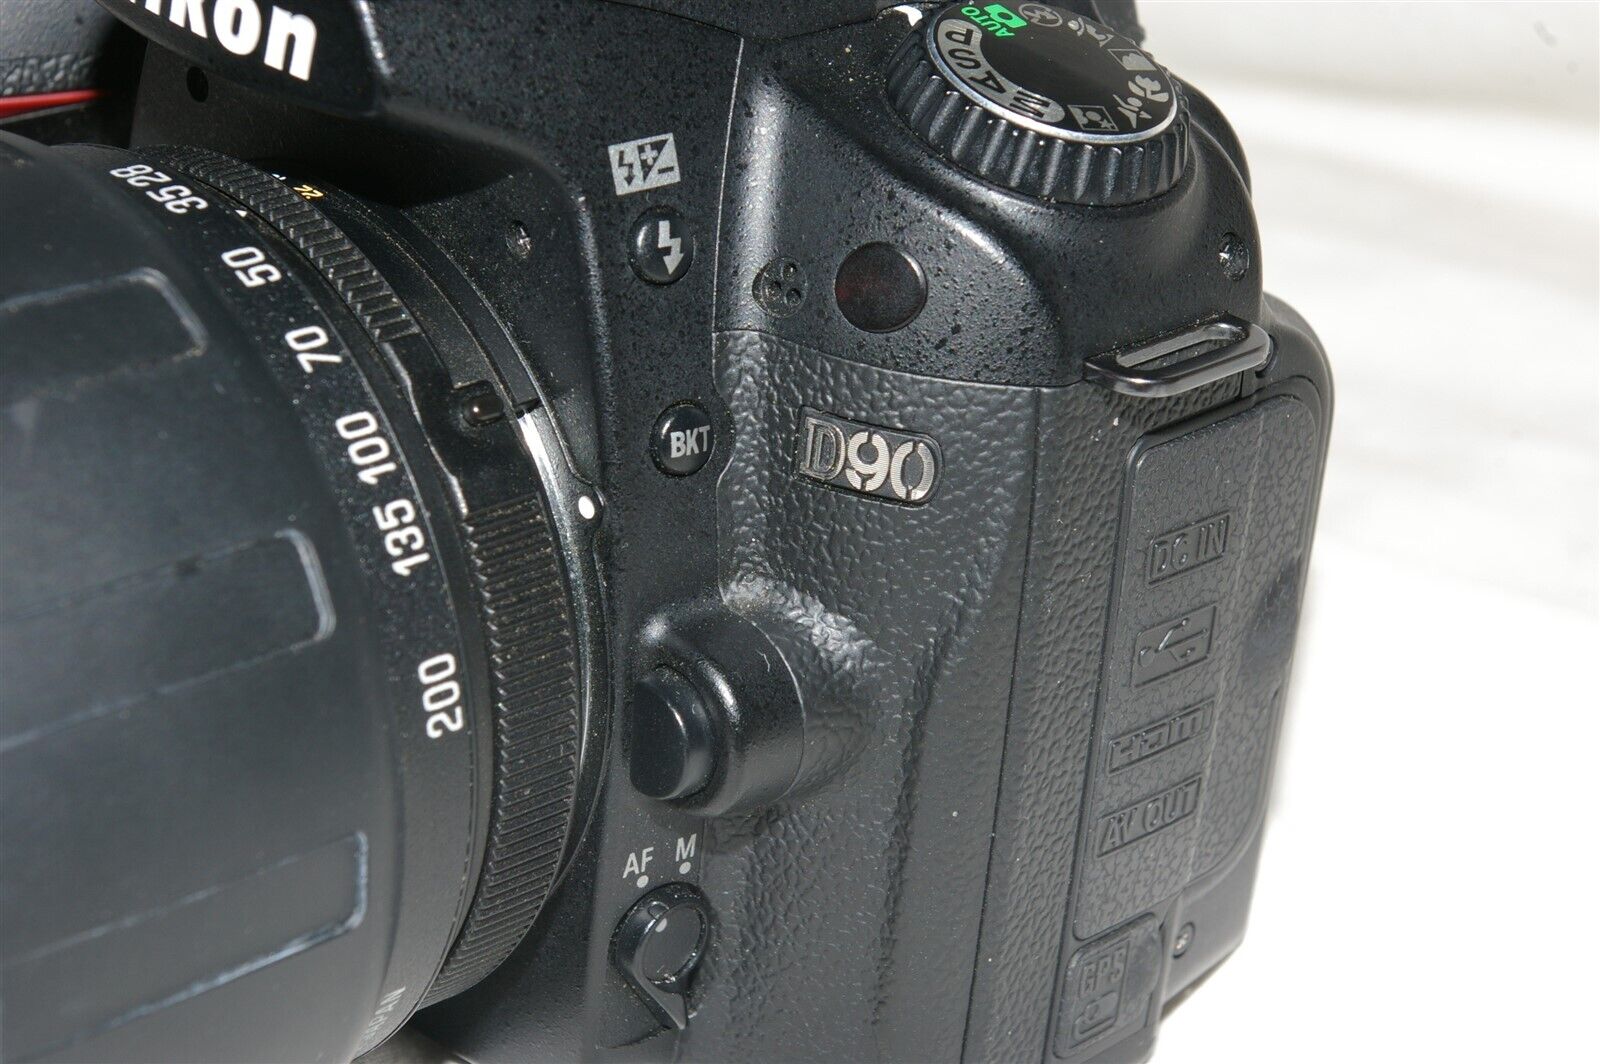 Nikon D90 12.3MP Digital SLR Camera w/28-200mm Tamron AF Lens TESTED!